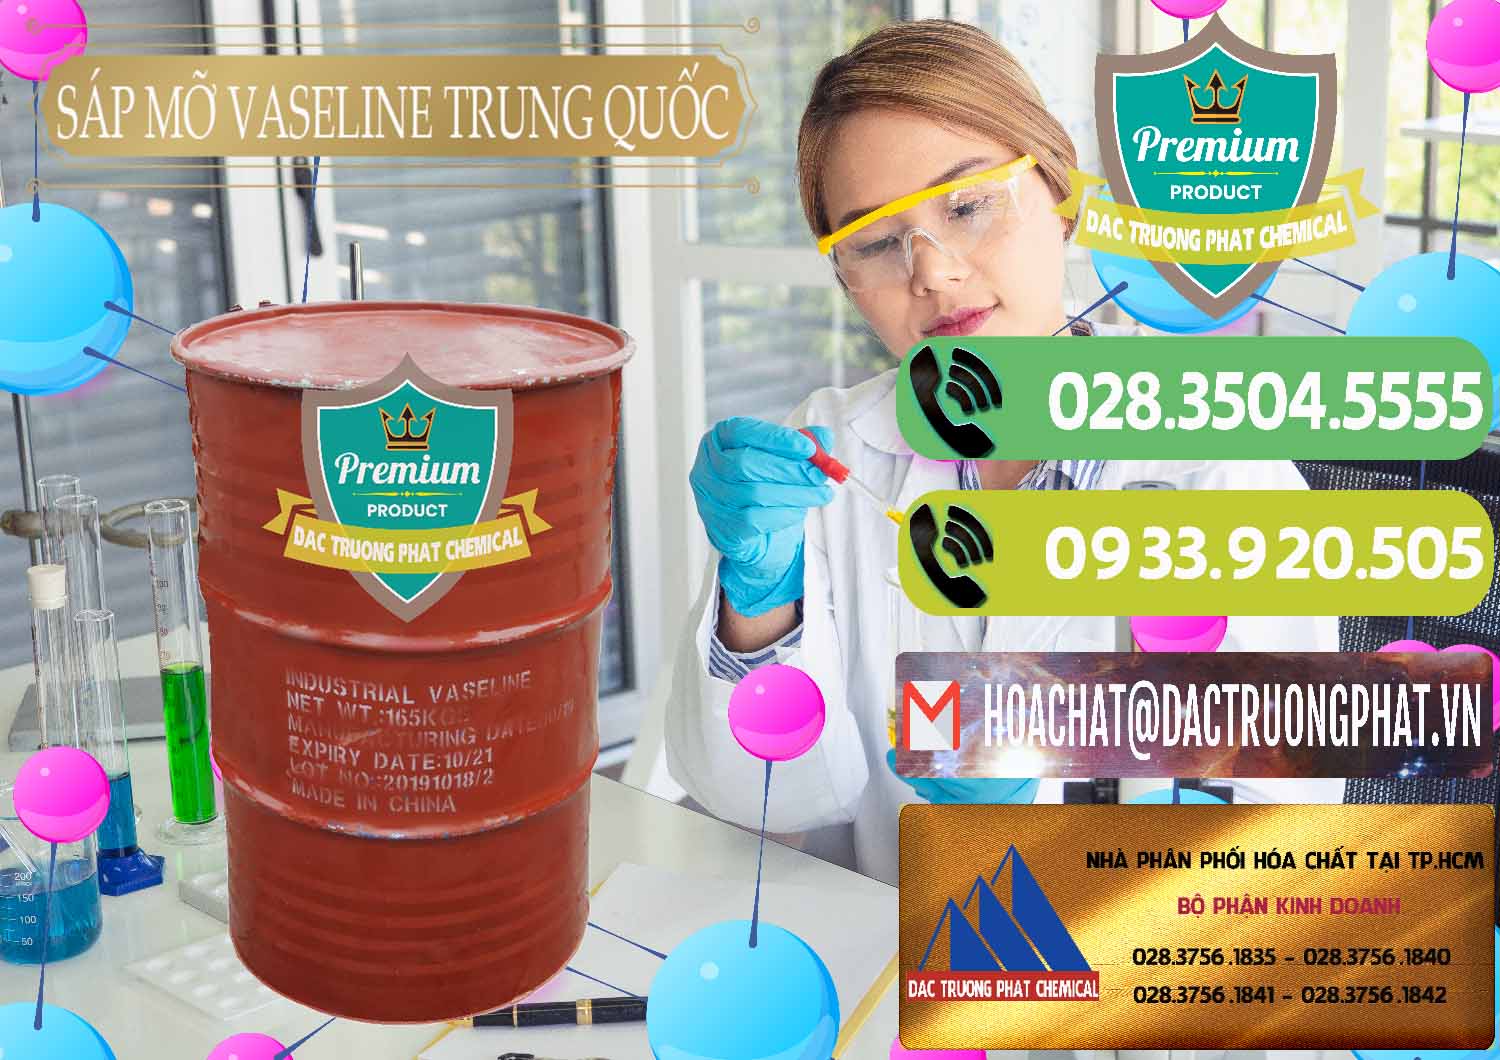 Công ty bán & phân phối Sáp Mỡ Vaseline Trung Quốc China - 0122 - Công ty bán & cung cấp hóa chất tại TP.HCM - hoachatmientay.vn